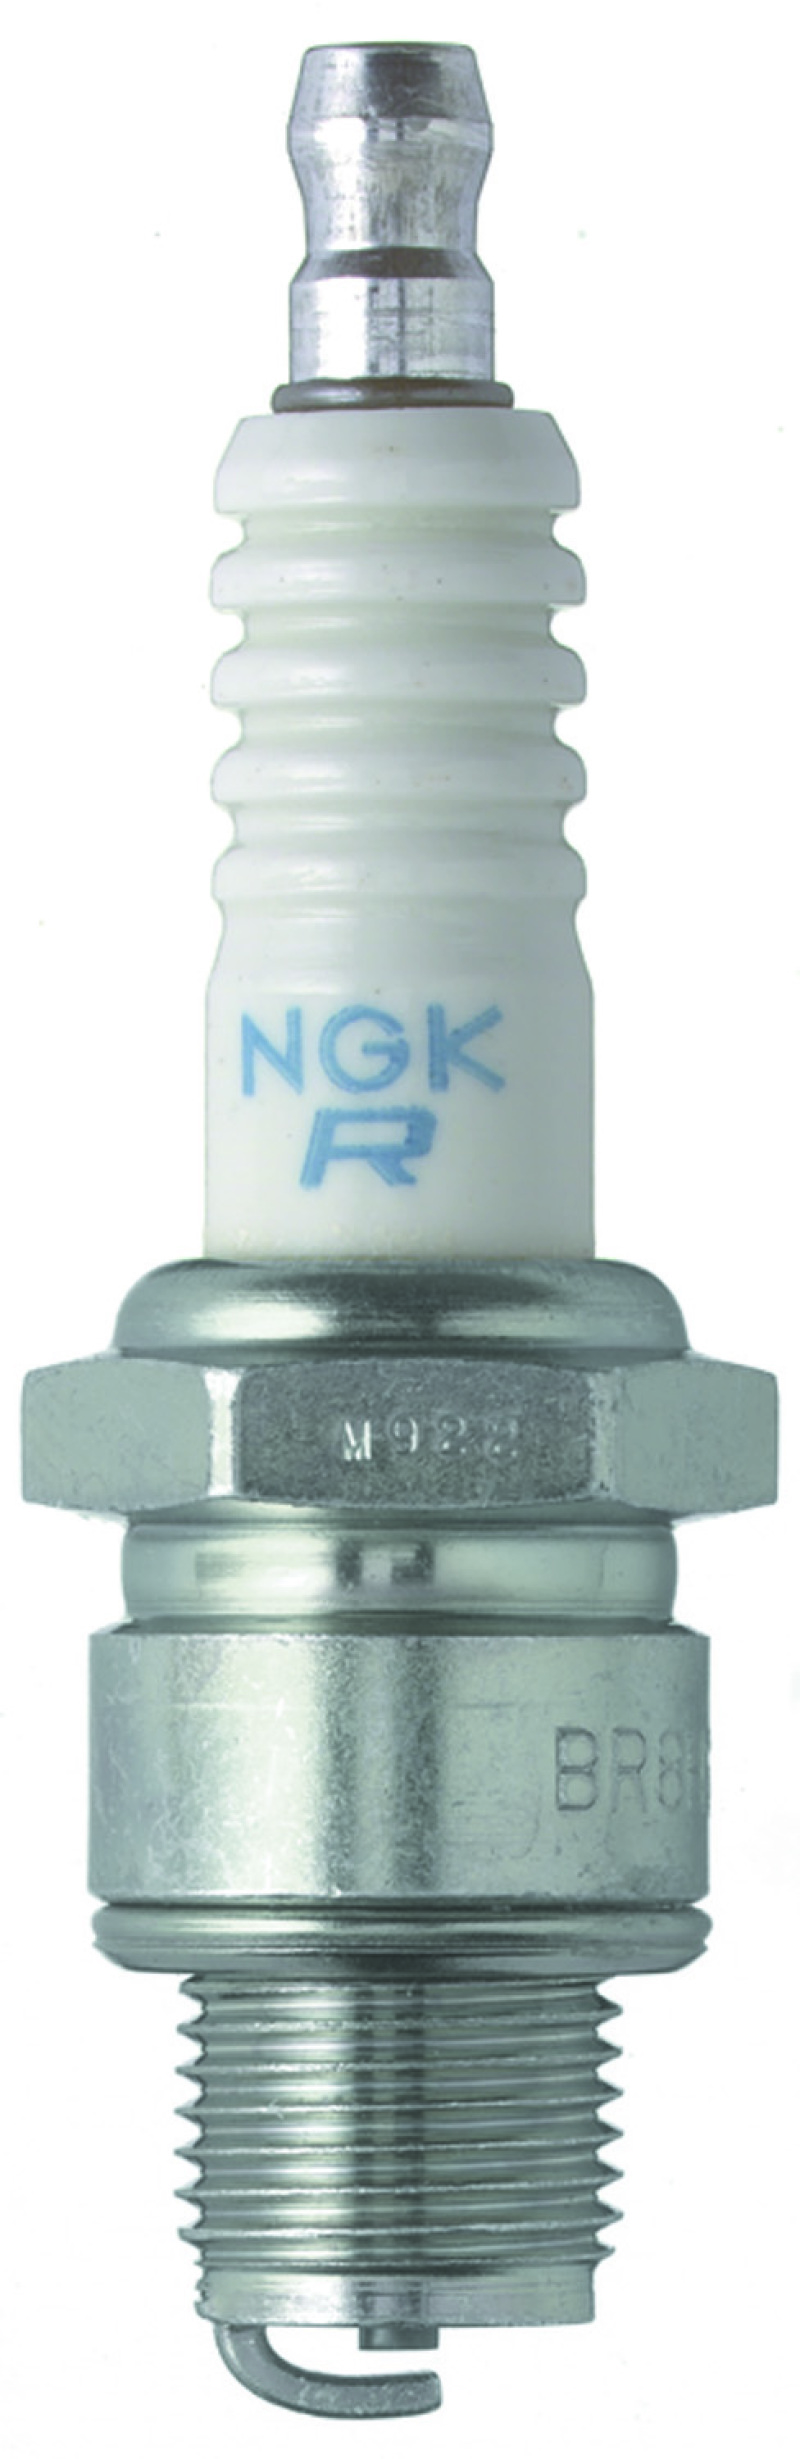 NGK Standard Spark Plug Box of 10 (BR6HS-10) - 1090